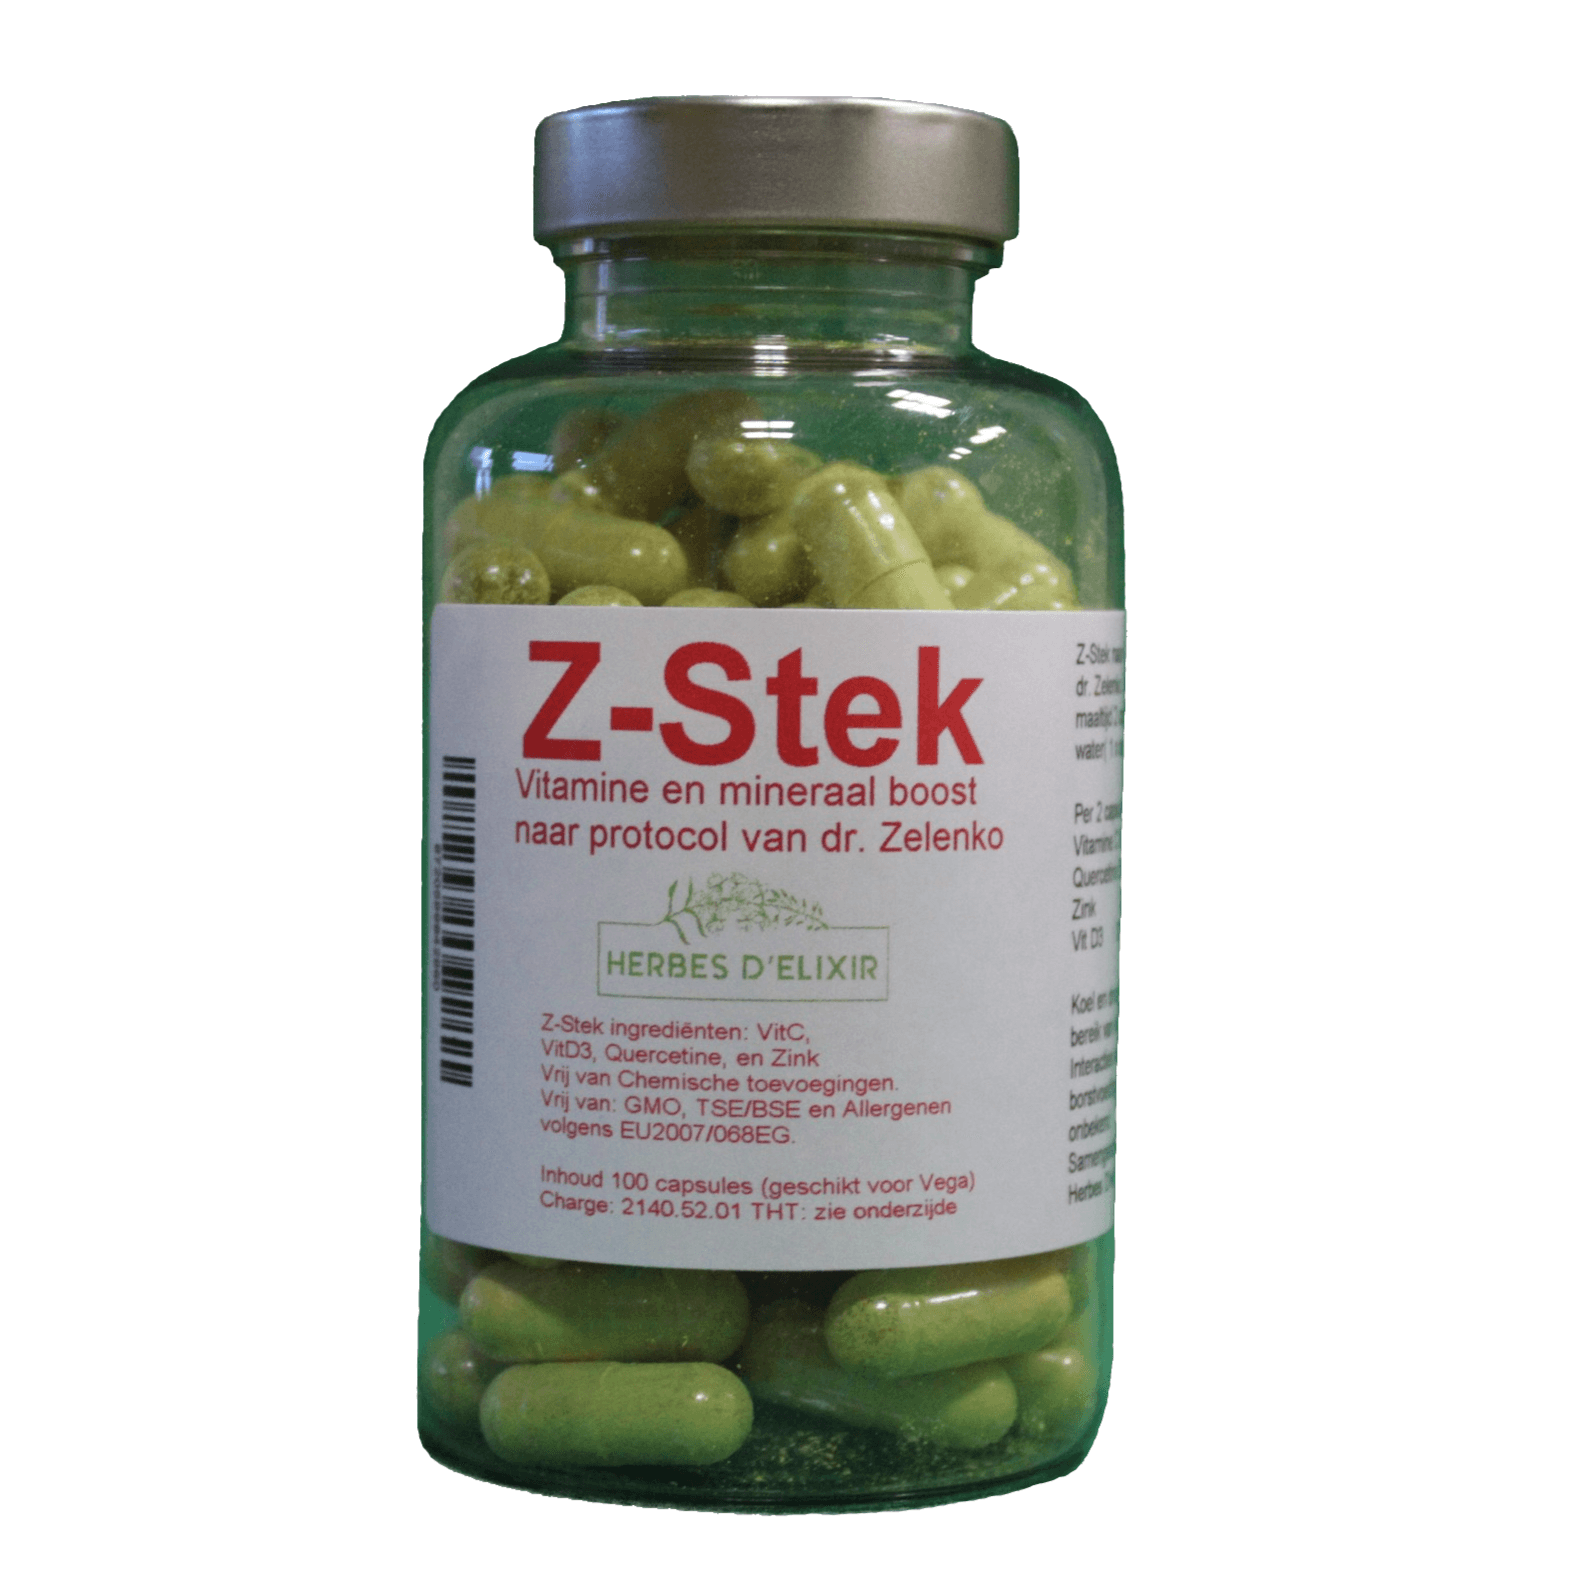 Z-Stek immune booster | Quercetine vitamine en mineralen boost